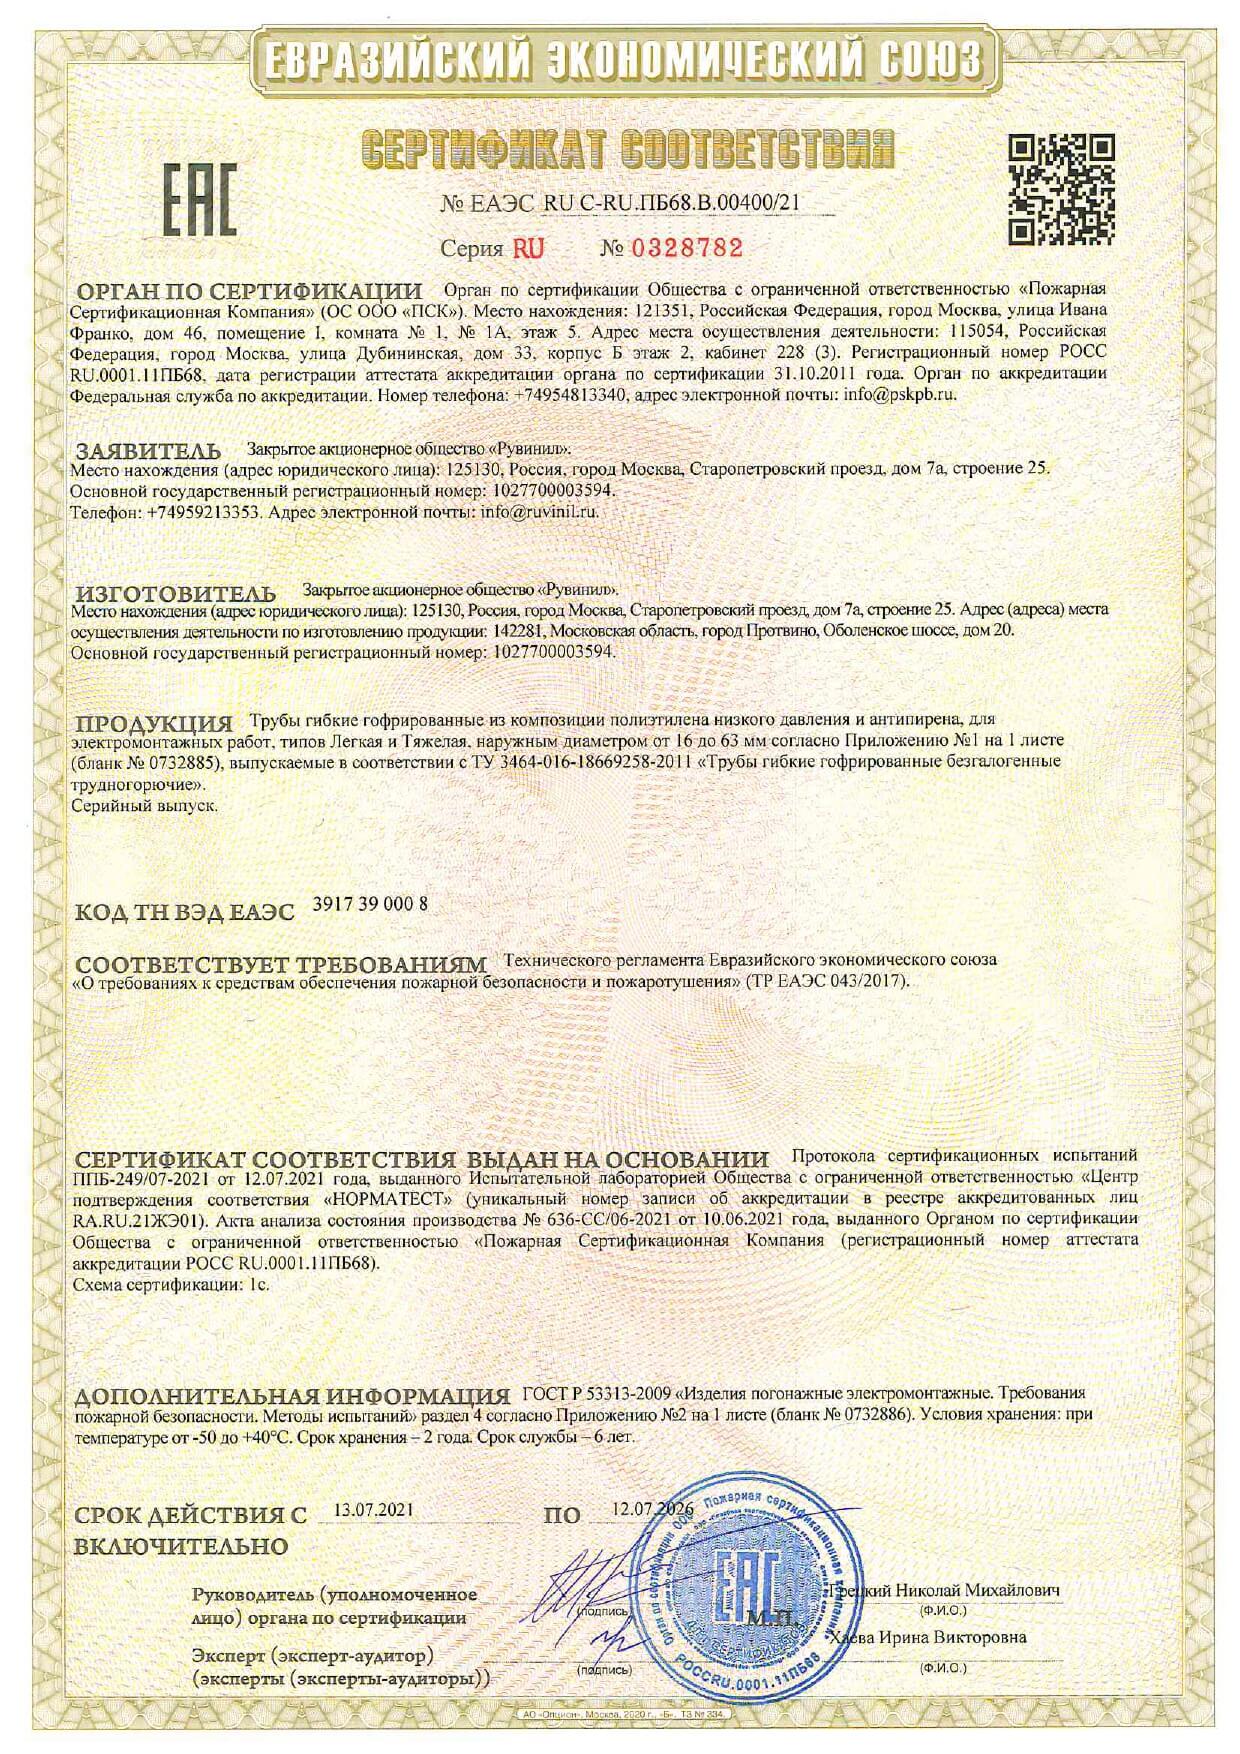 Сертификат соответствия - труба гофрированная ПНД Рувинил